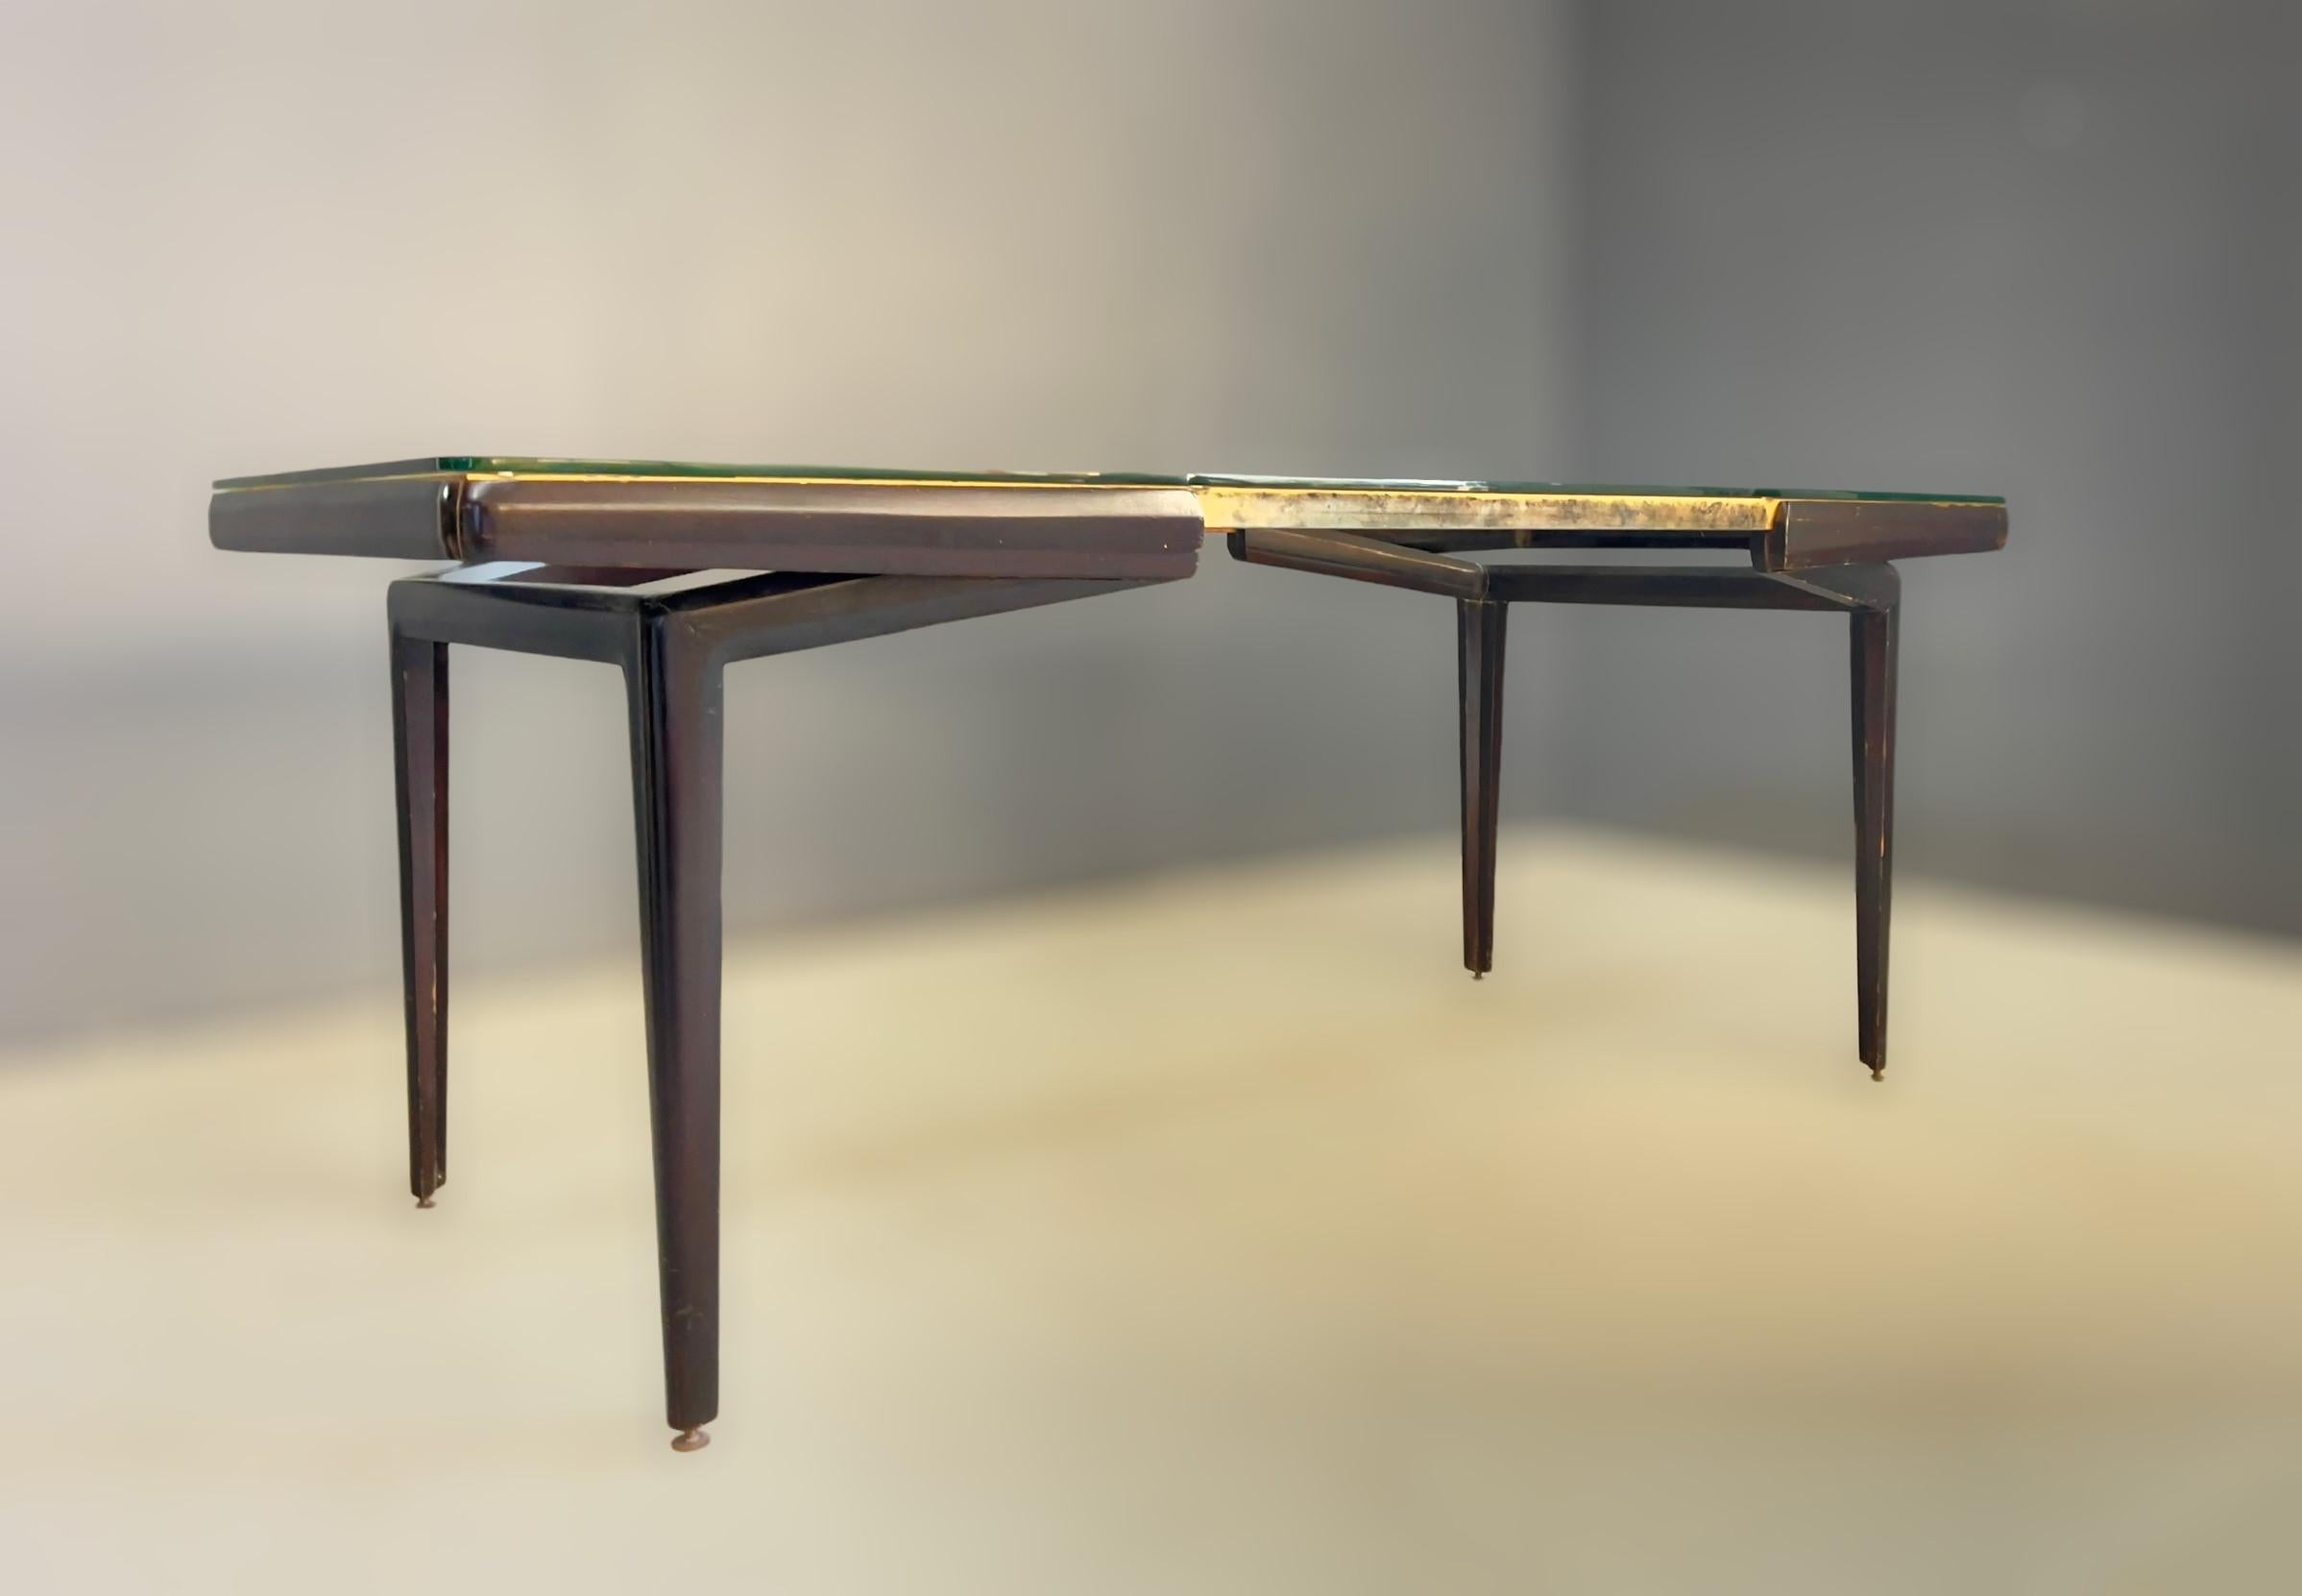 Schöner Esstisch mit Holz- und Messingrahmen und Glasplatte, Giovanni Ferrabini zugeschrieben. Italienische Herstellung. 1950s